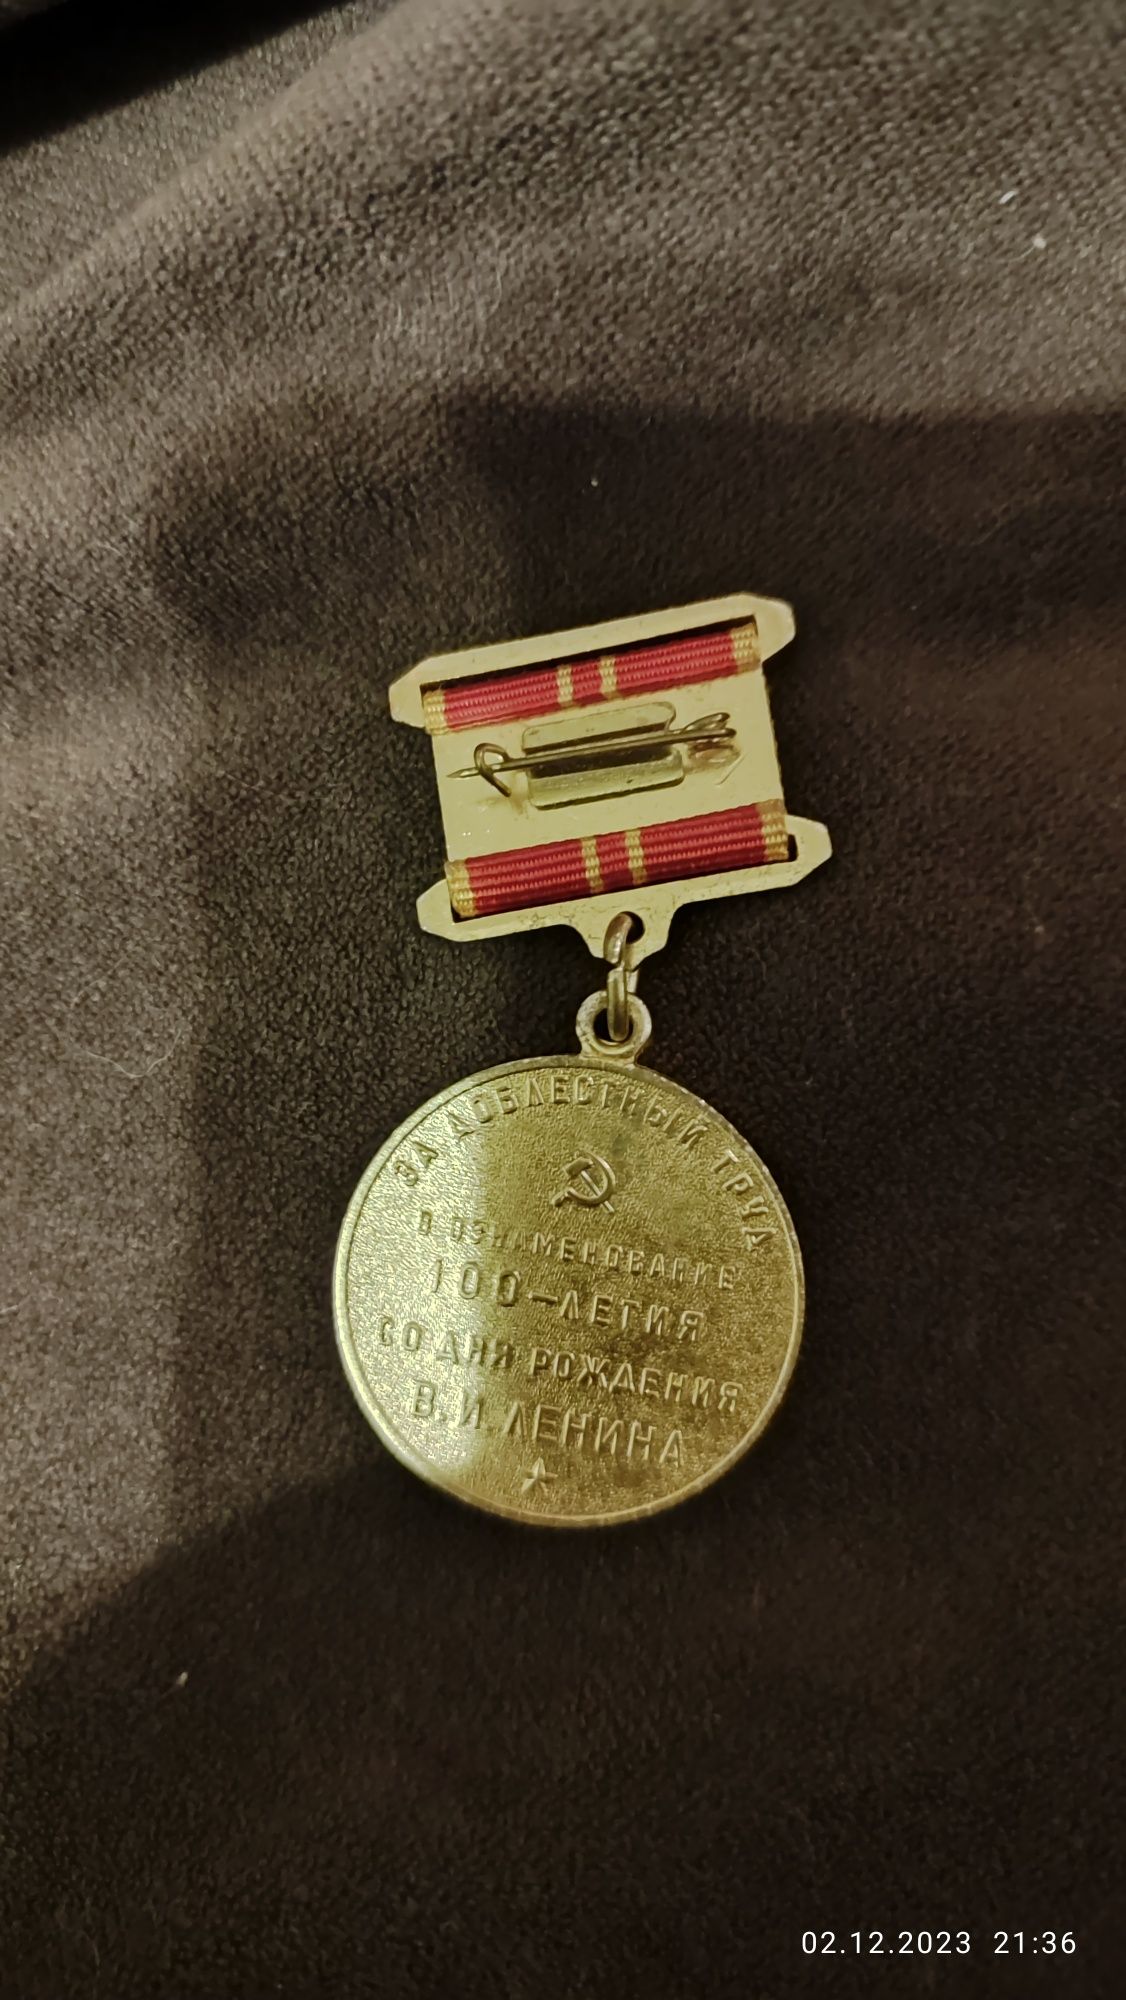 Продам медаль за труд,ветеран труда и нагрудный знак